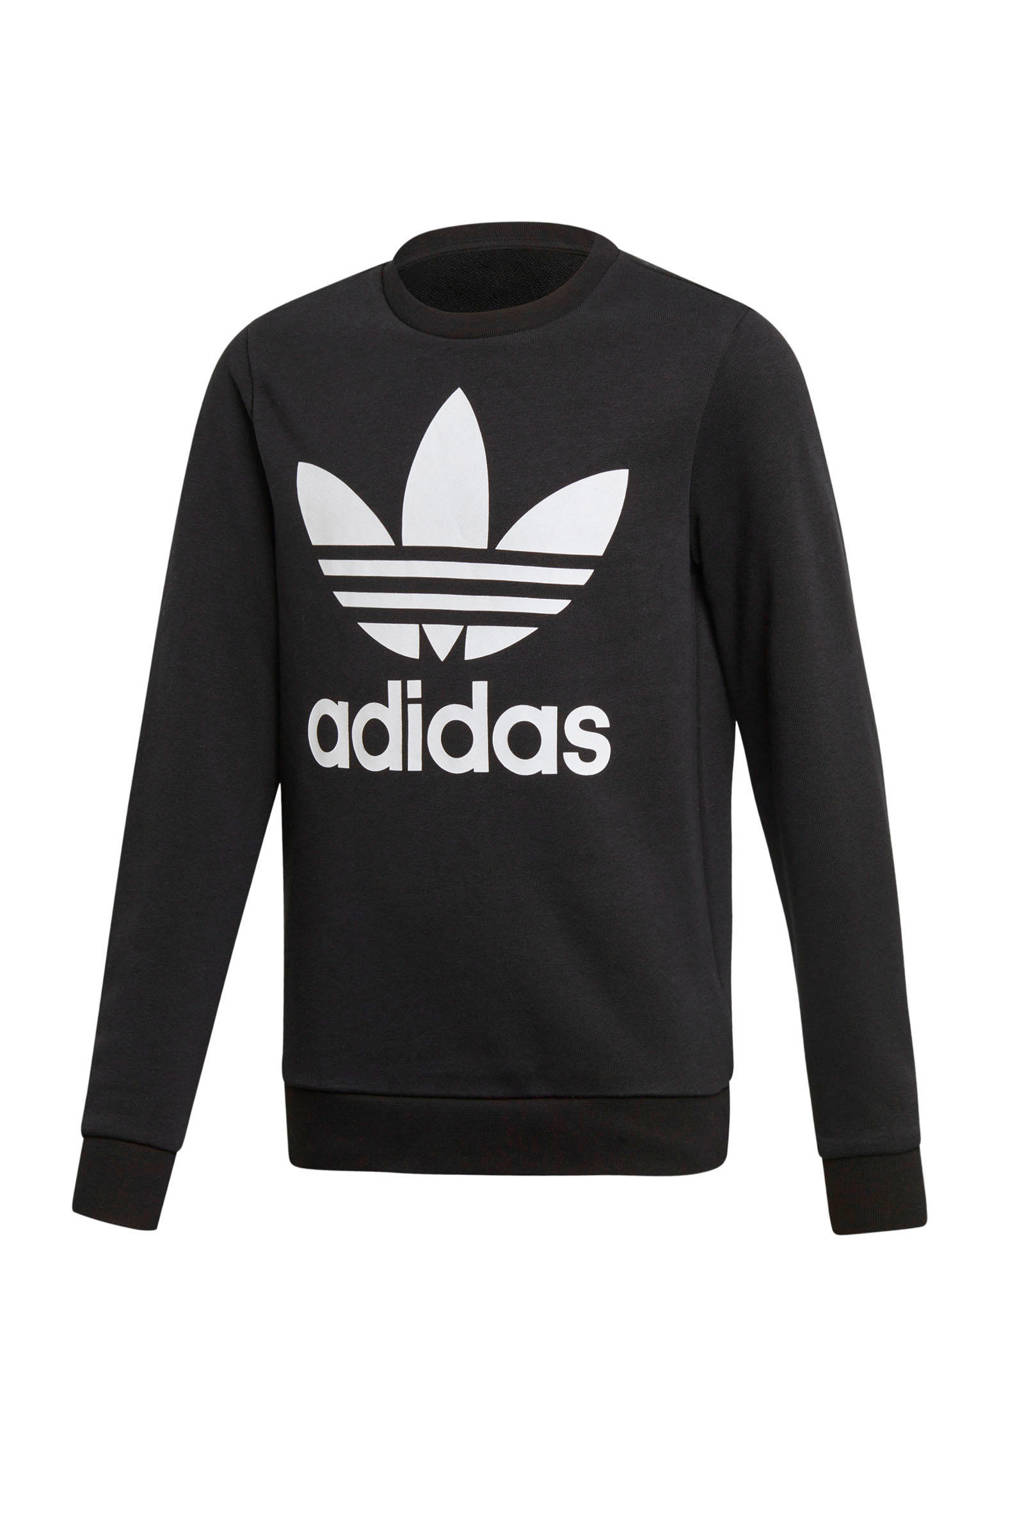 adidas Originals unisex Adicolor sweater zwart/wit